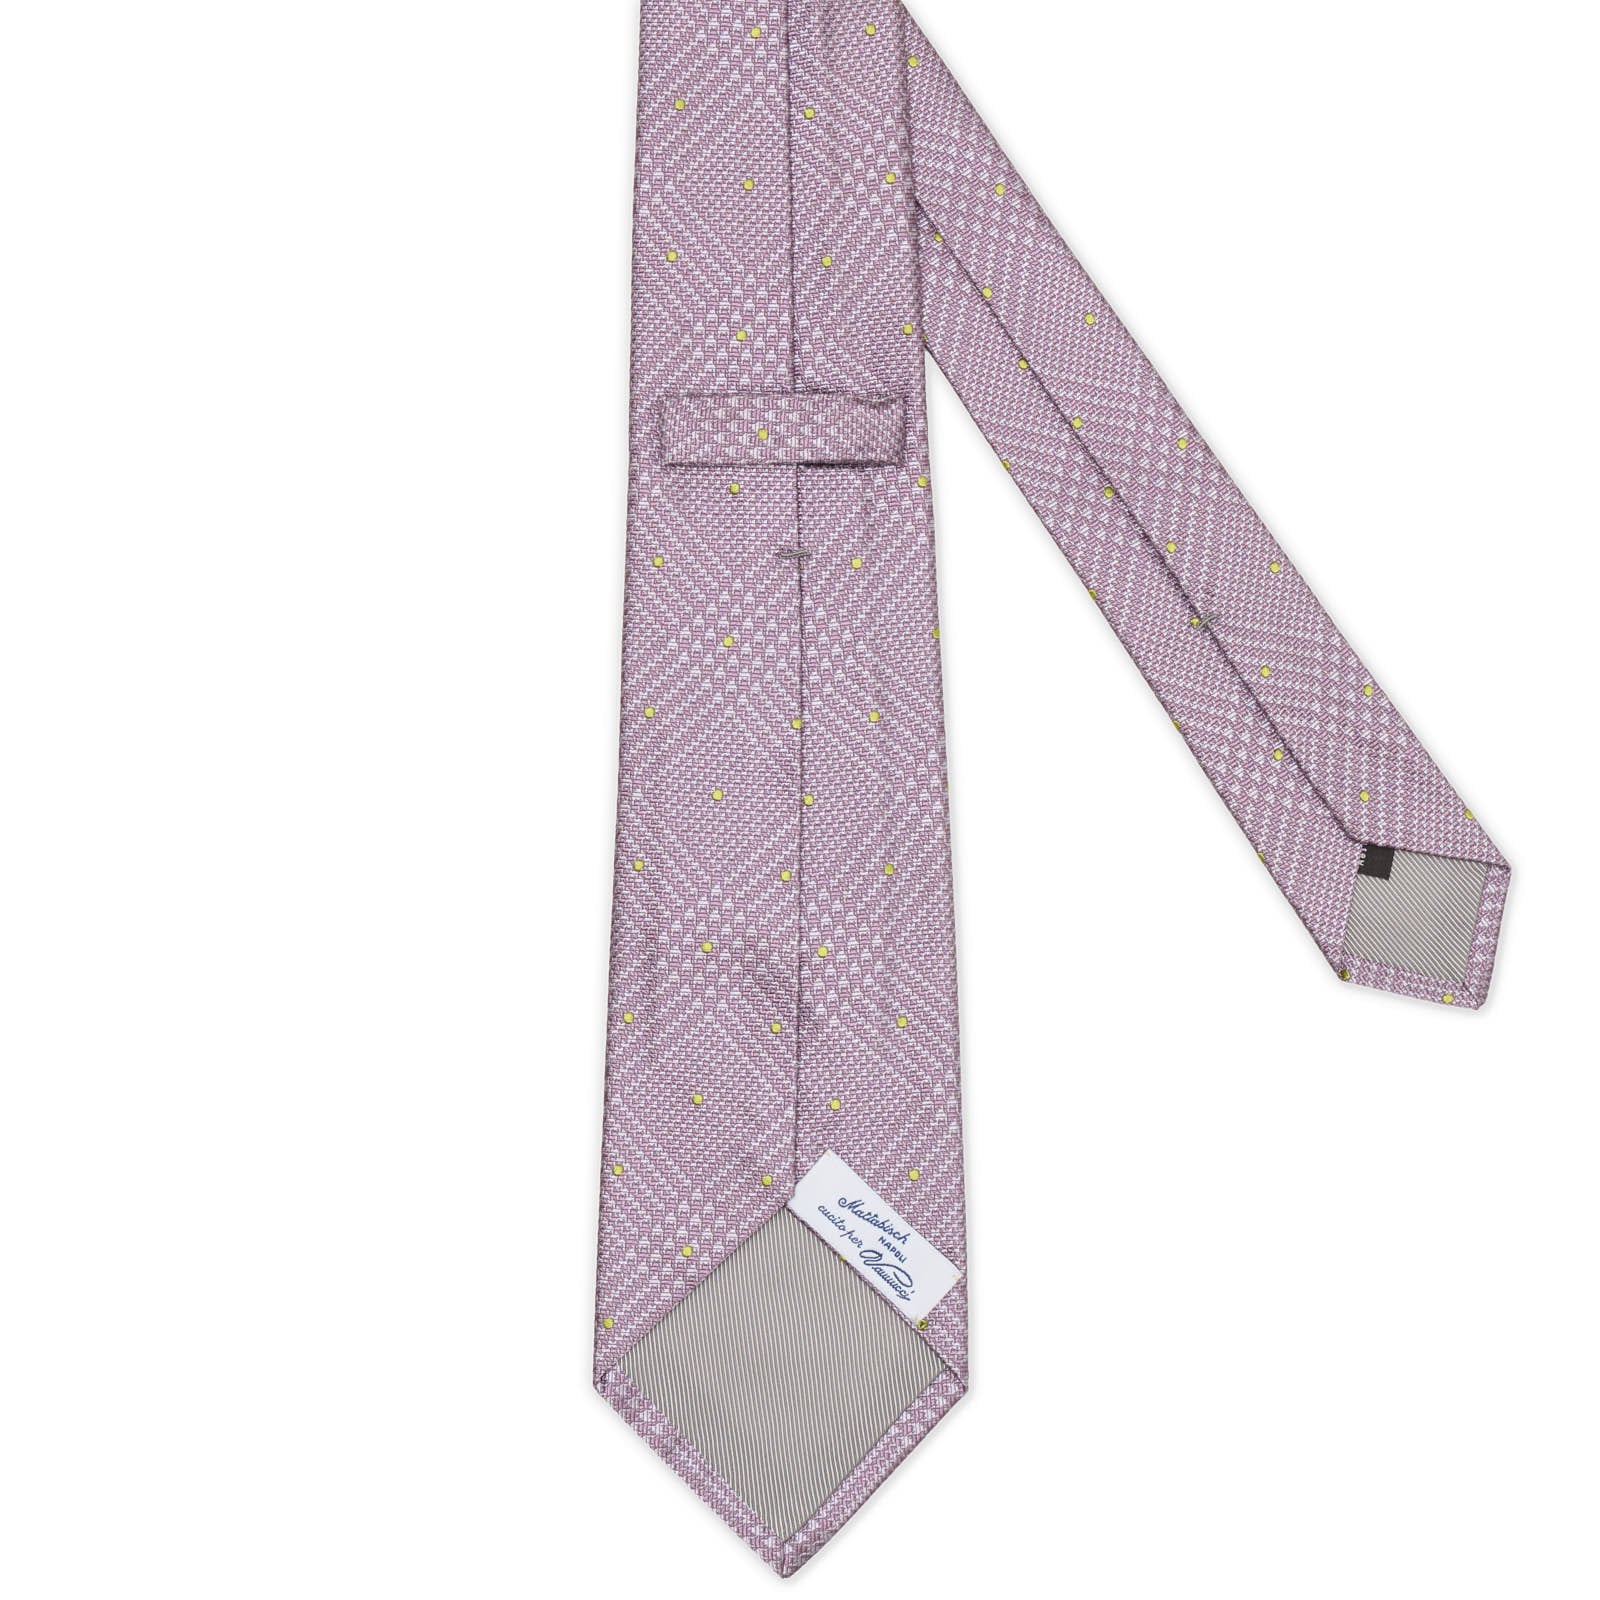 MATTABISCH FOR VANNUCCI Purple Plaid Seven Fold Silk Tie NEW